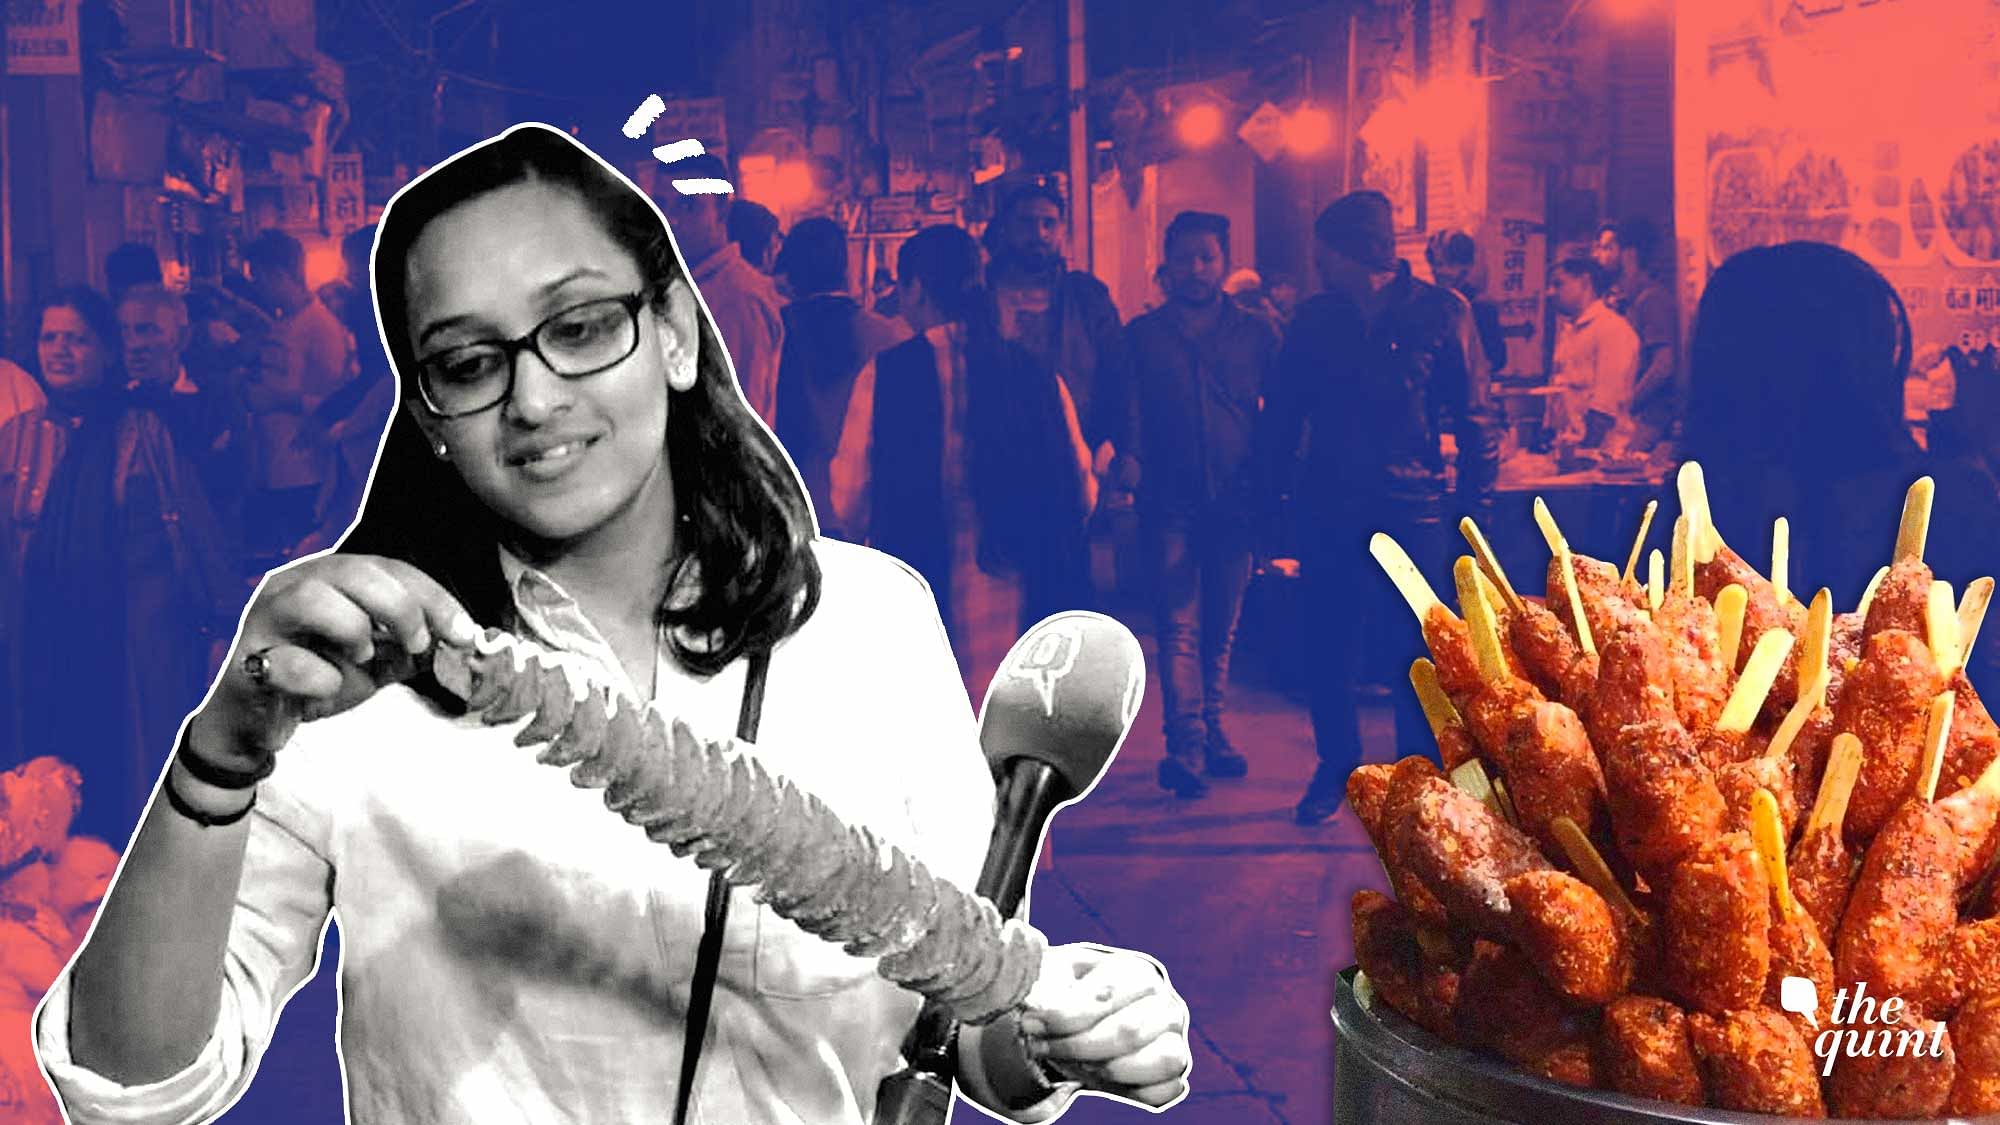 इंदौर के खाने के शौकीन सियासत के बारे में क्या सोचते हैं